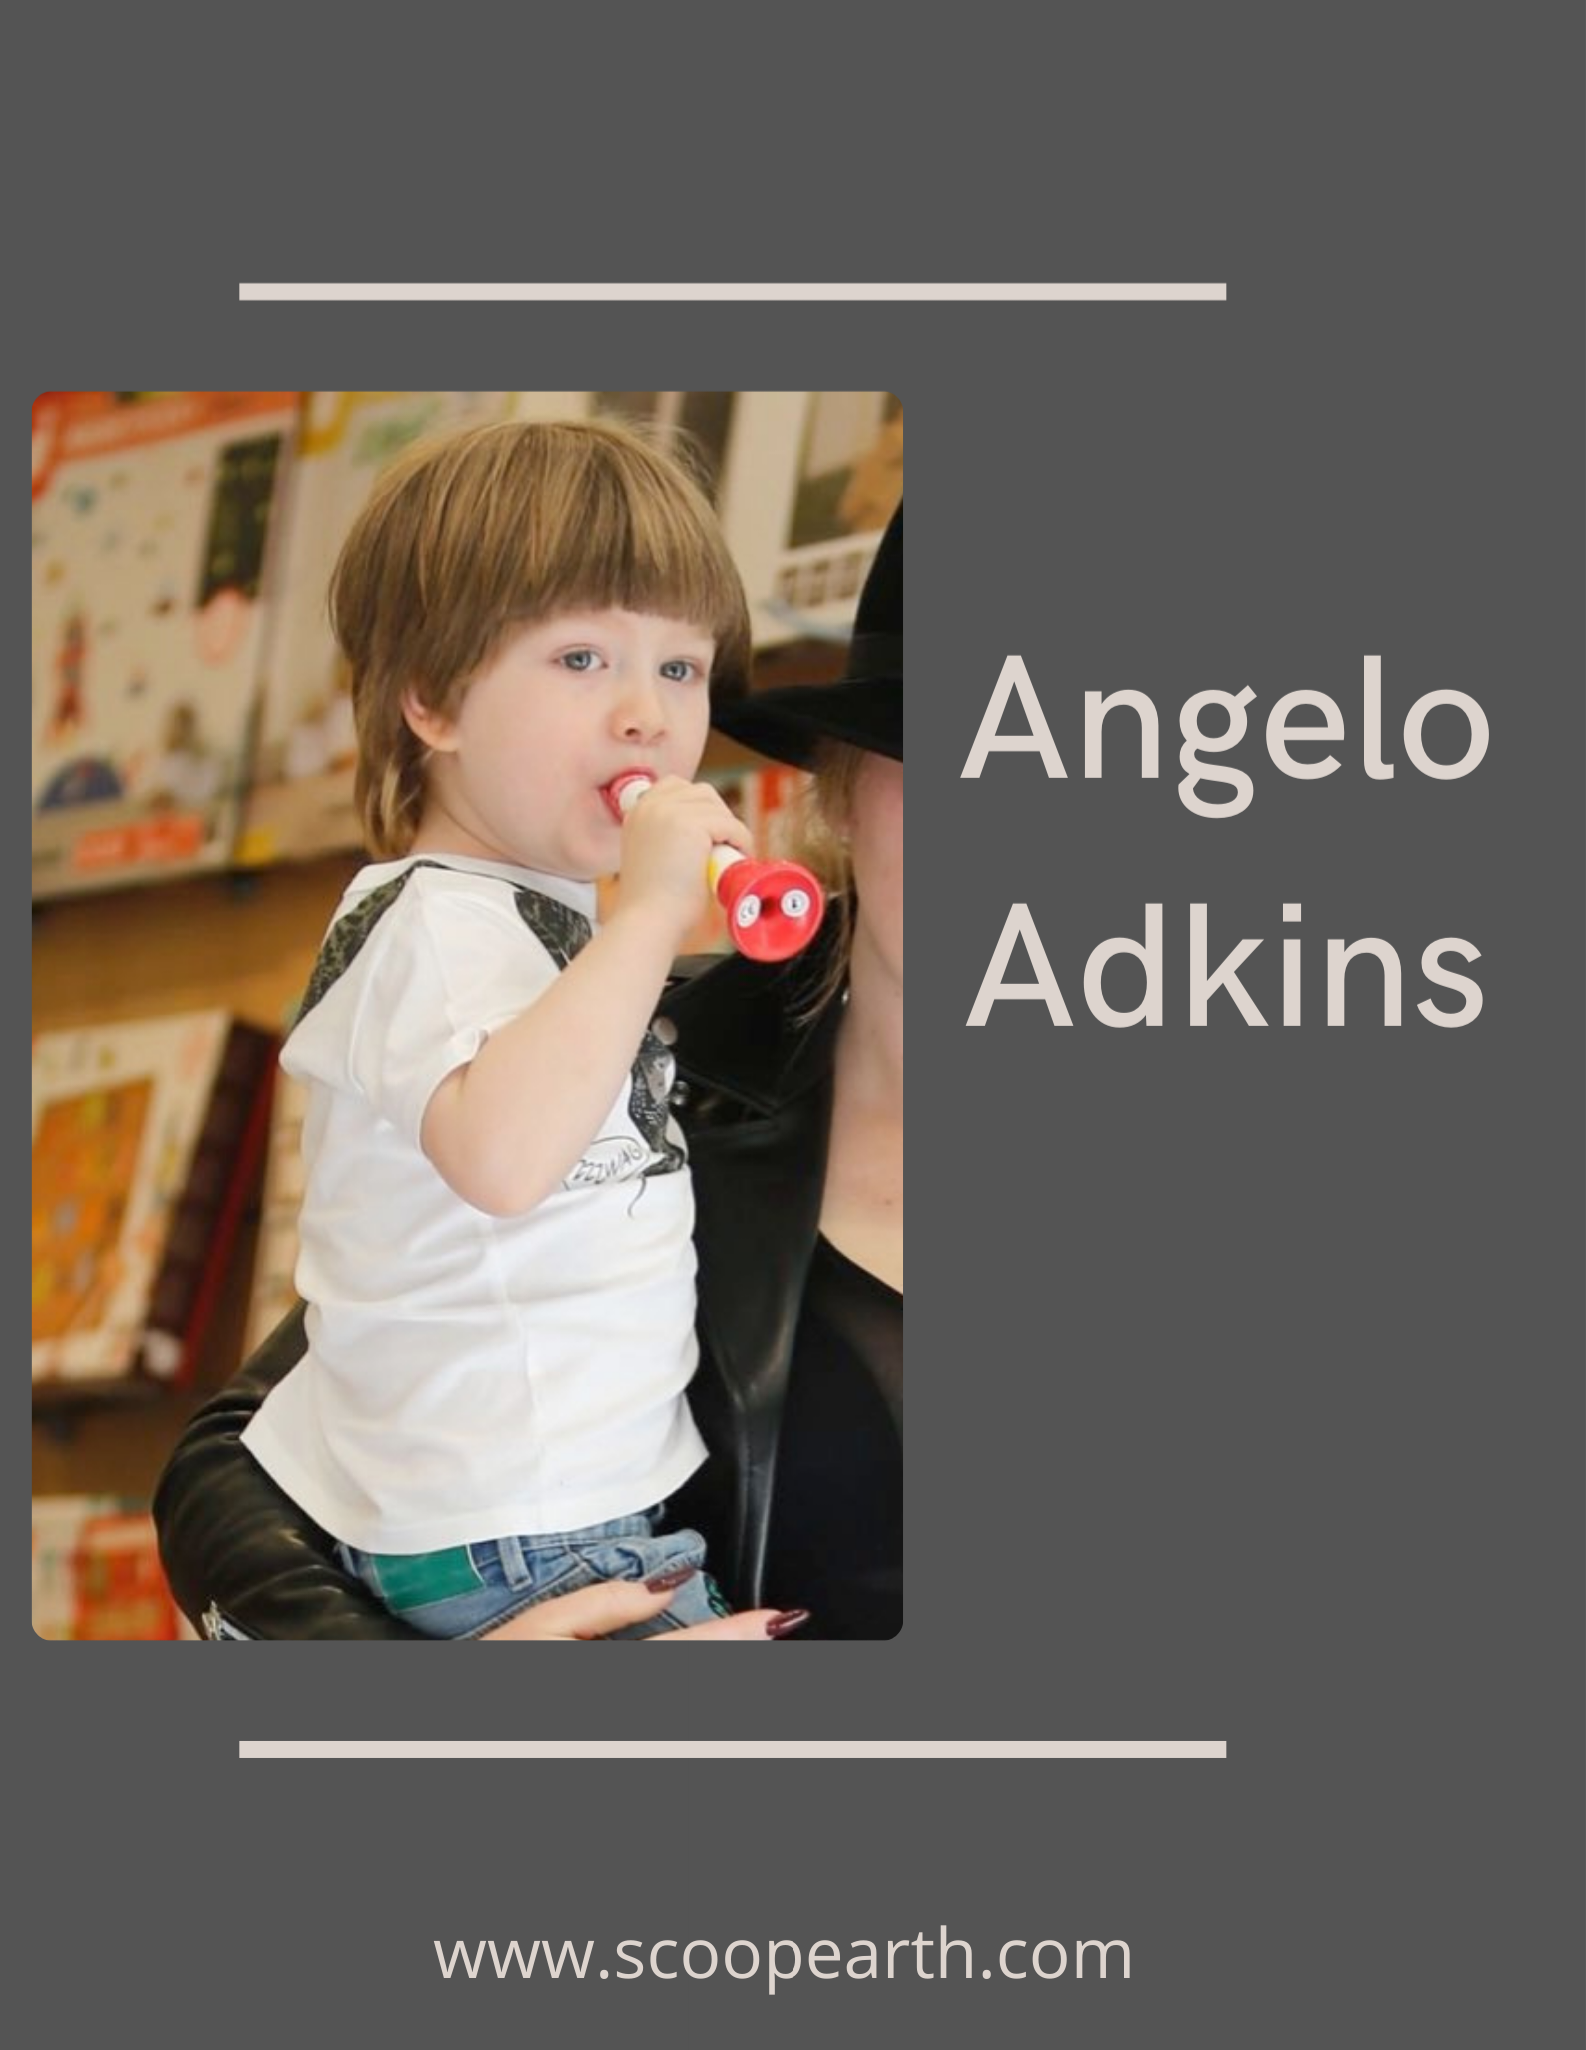 Angelo Adkins